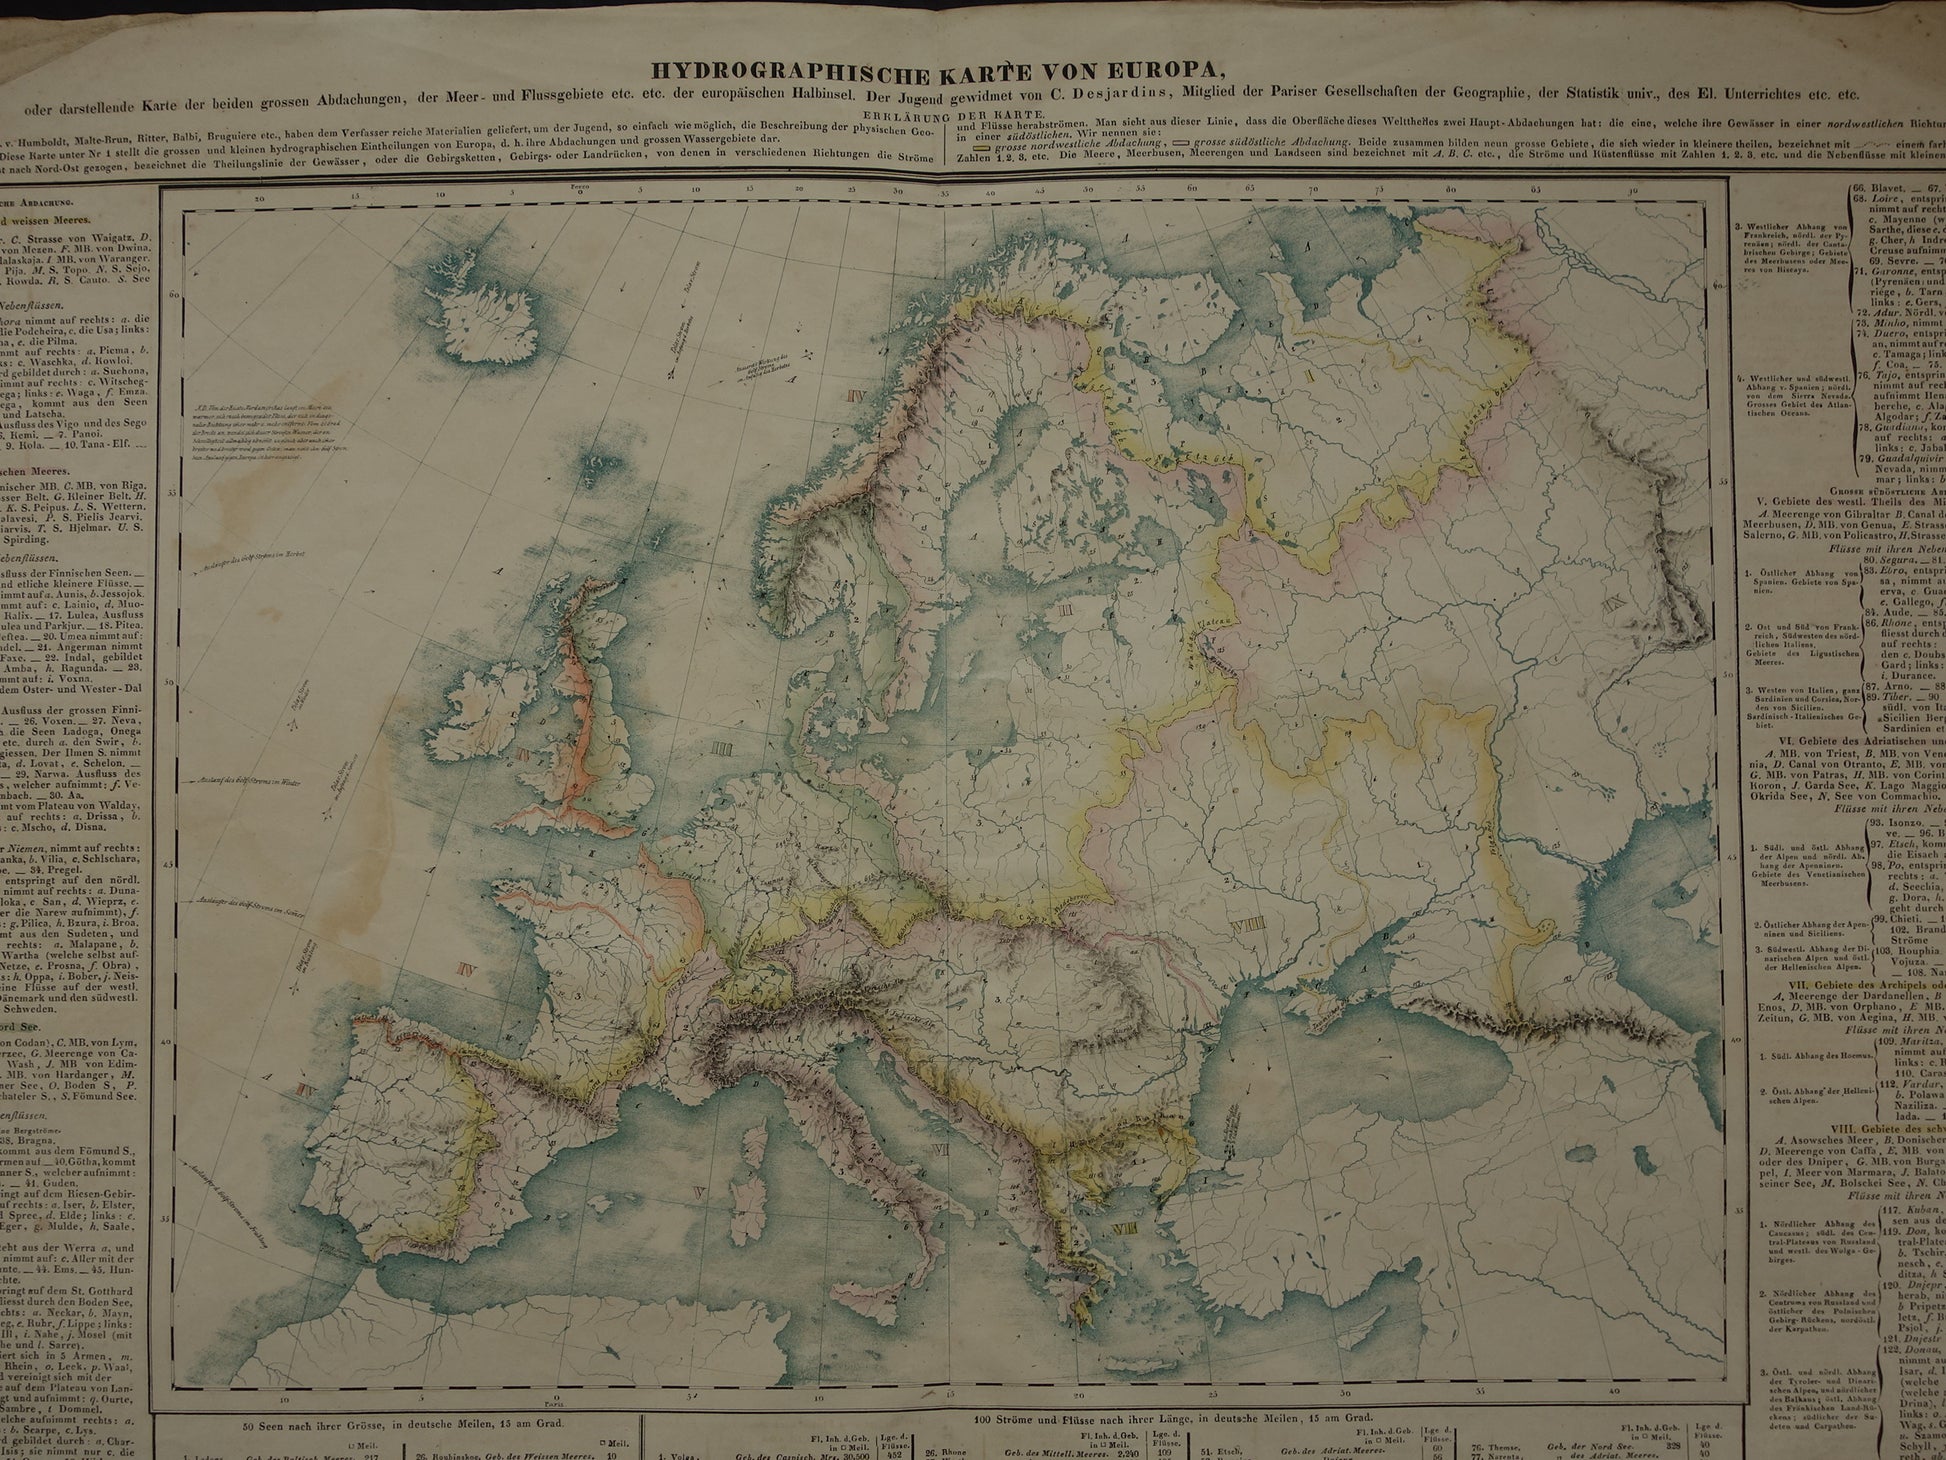 Hydrographische karte von Europa - Desjardins 1840